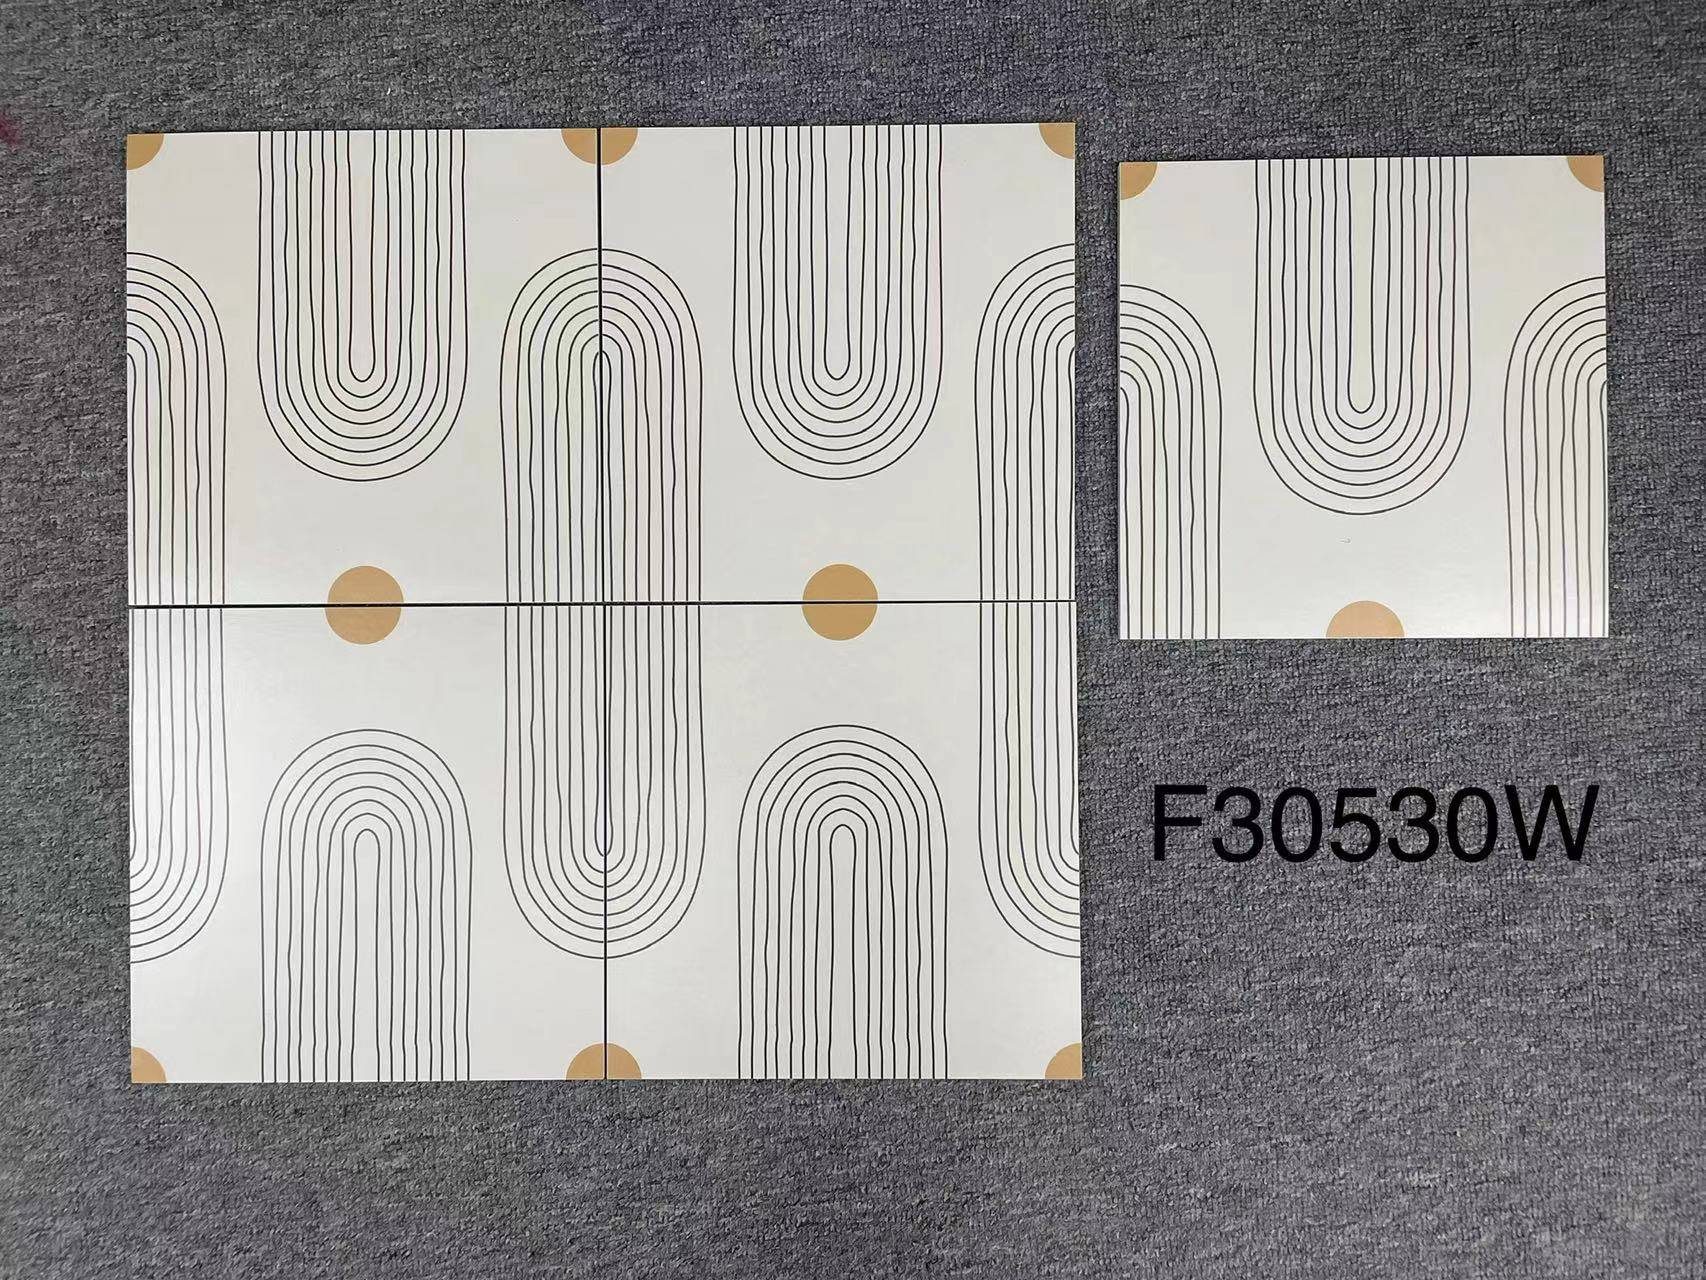 中國佛山瓷磚 China Foshan Tiles Encaustic Tiles 啞光地磚 牆磚F30501 F30518W F30530W花磚 裝飾磚 混裝發貨 隨機圖案 30×30cm